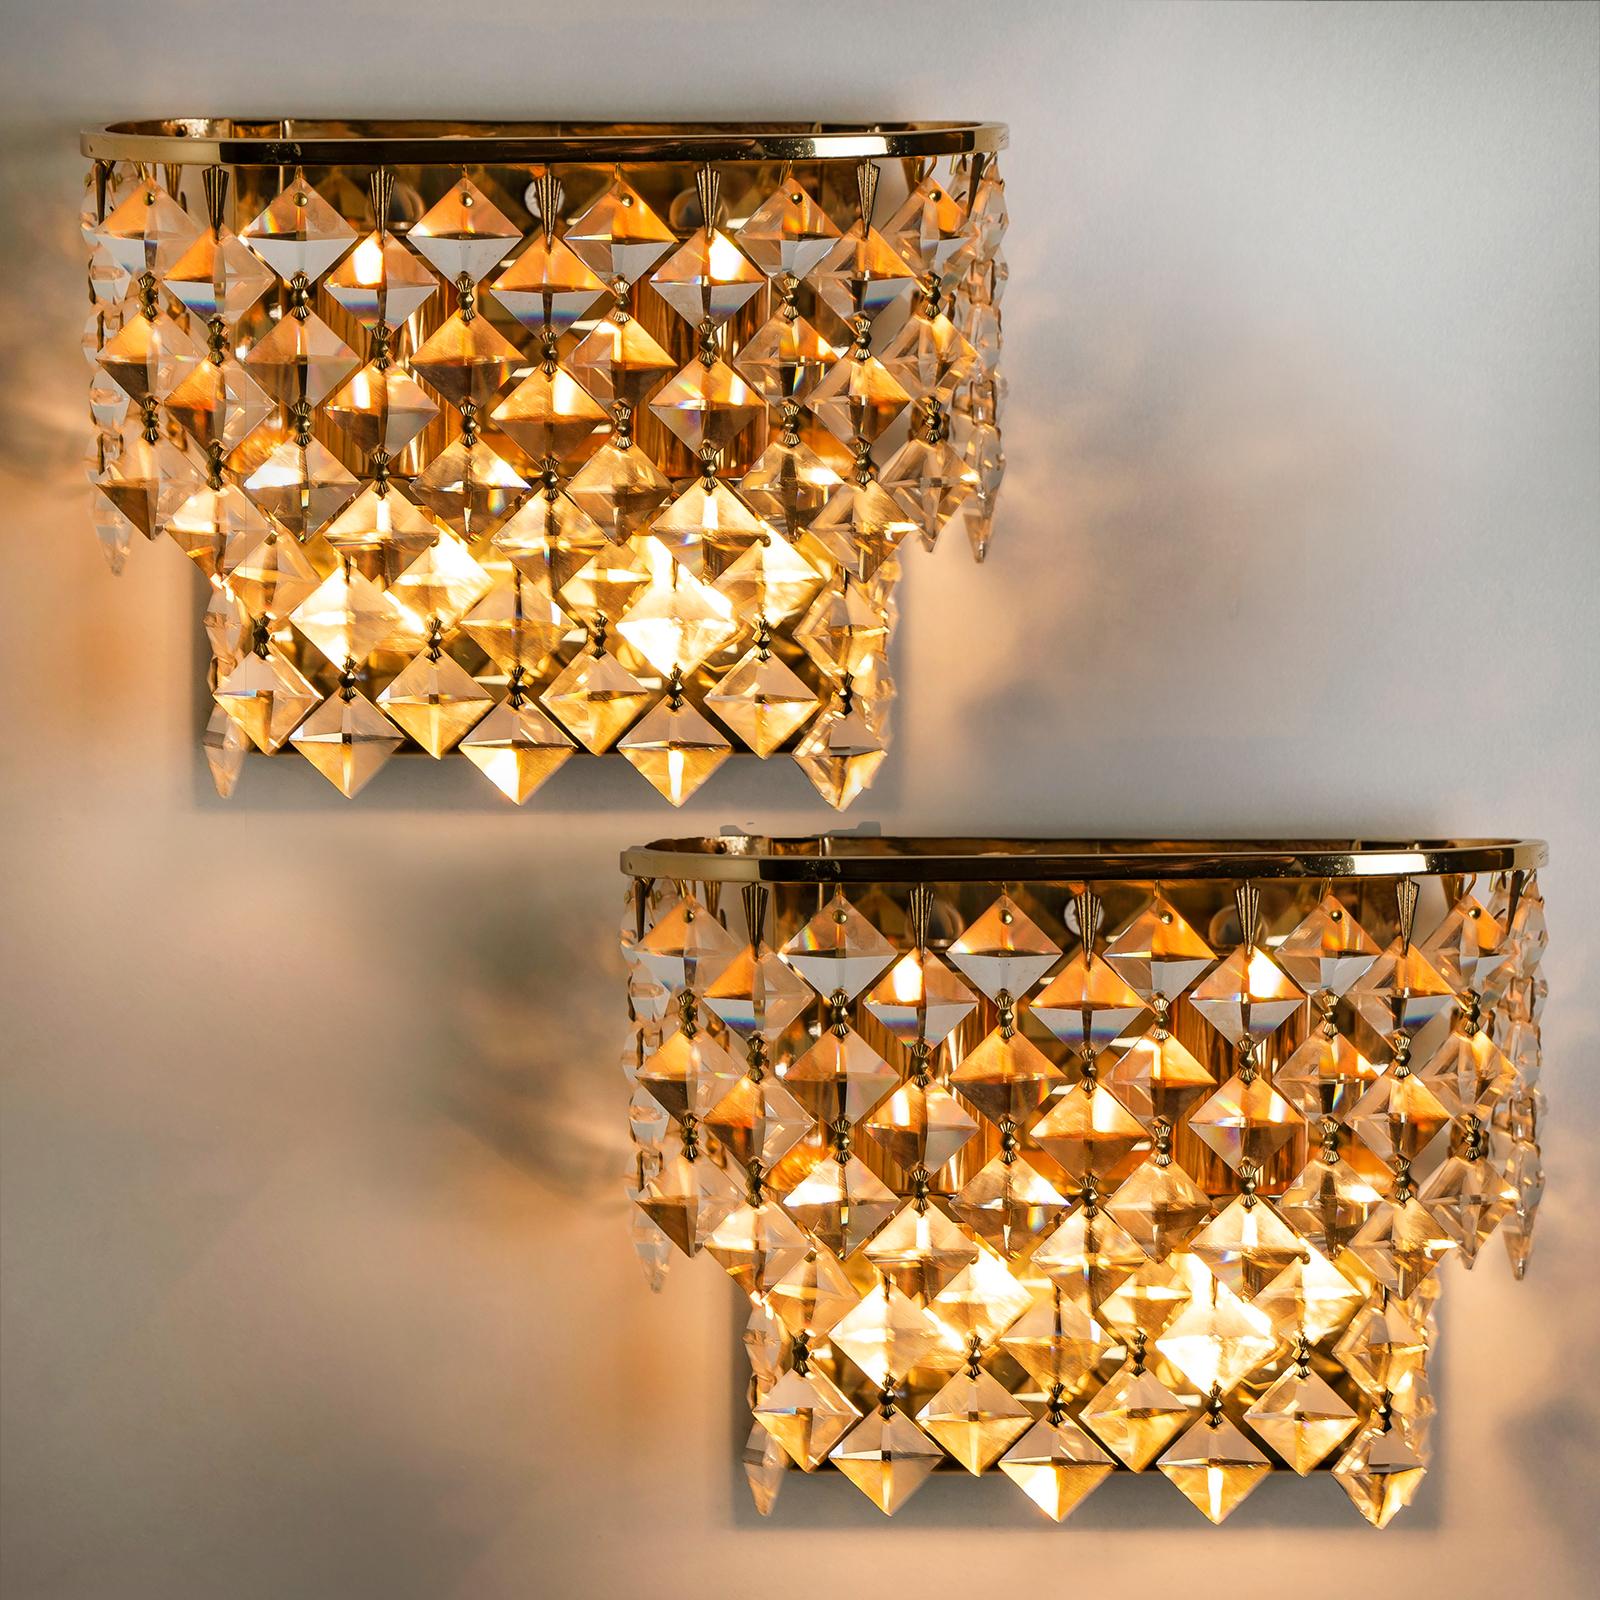 Schönes Paar kleiner Palwa-Wandleuchter aus den 1960er Jahren. Quadratische Glaskristalle in einer Lampe. Das elegante und schicke Modell ist typisch für Palwa, höchste Qualität und beste MATERIALIEN. Beleuchter schön.

Sehr guter Zustand, gut